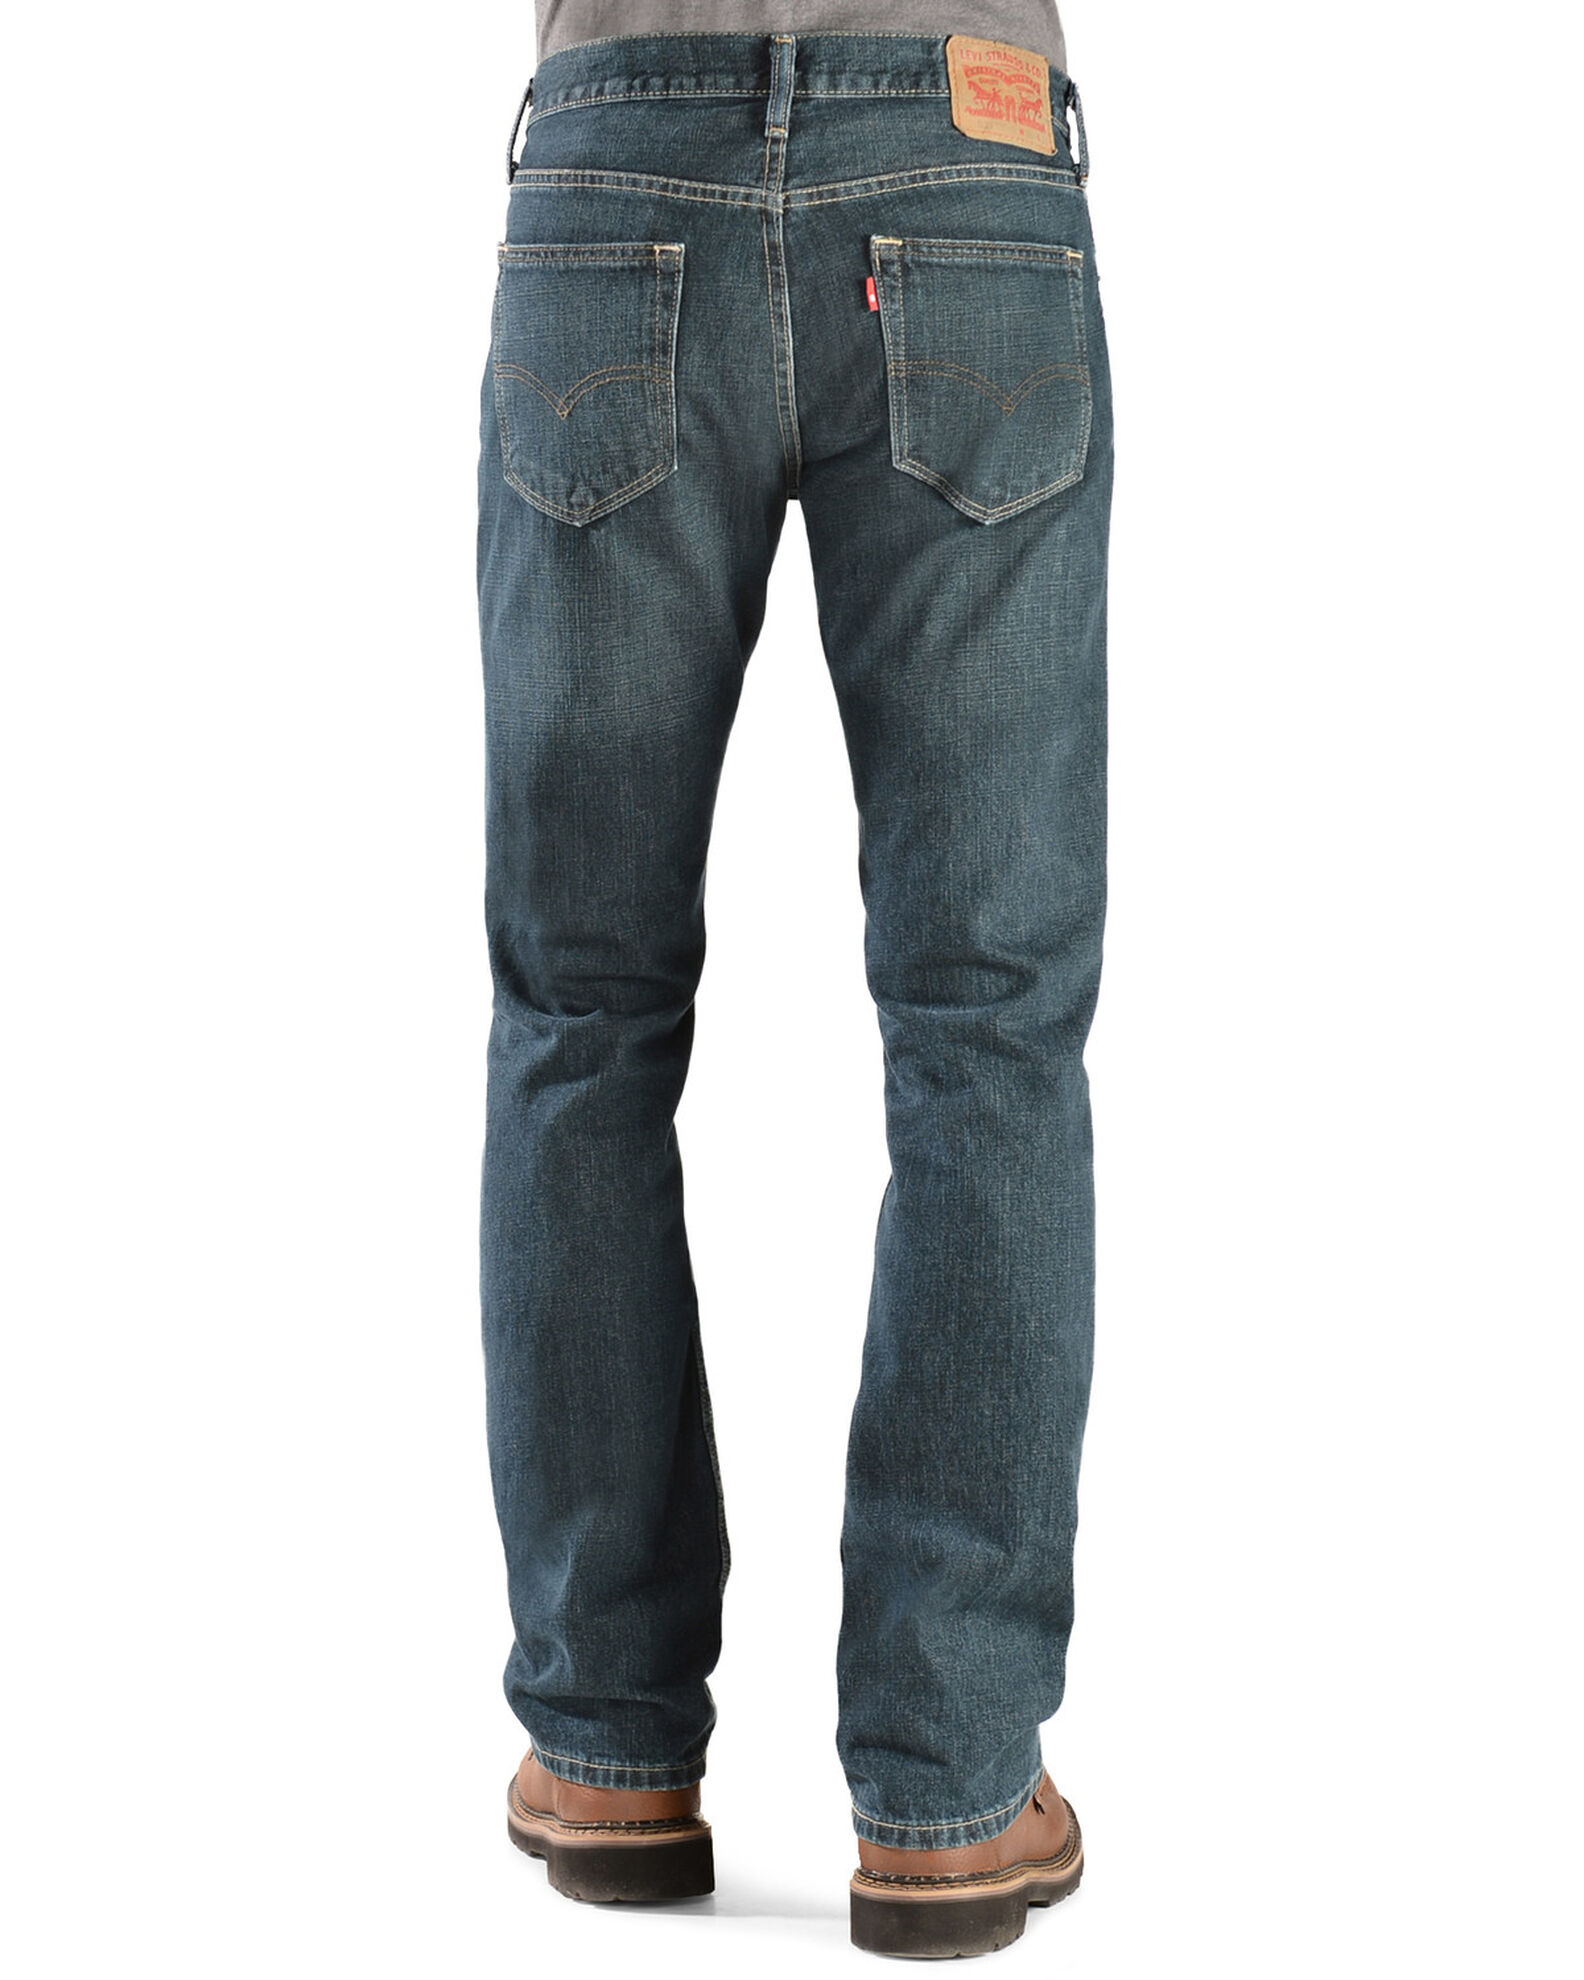 Descubrir 68+ imagen levi’s low rise bootcut jeans mens